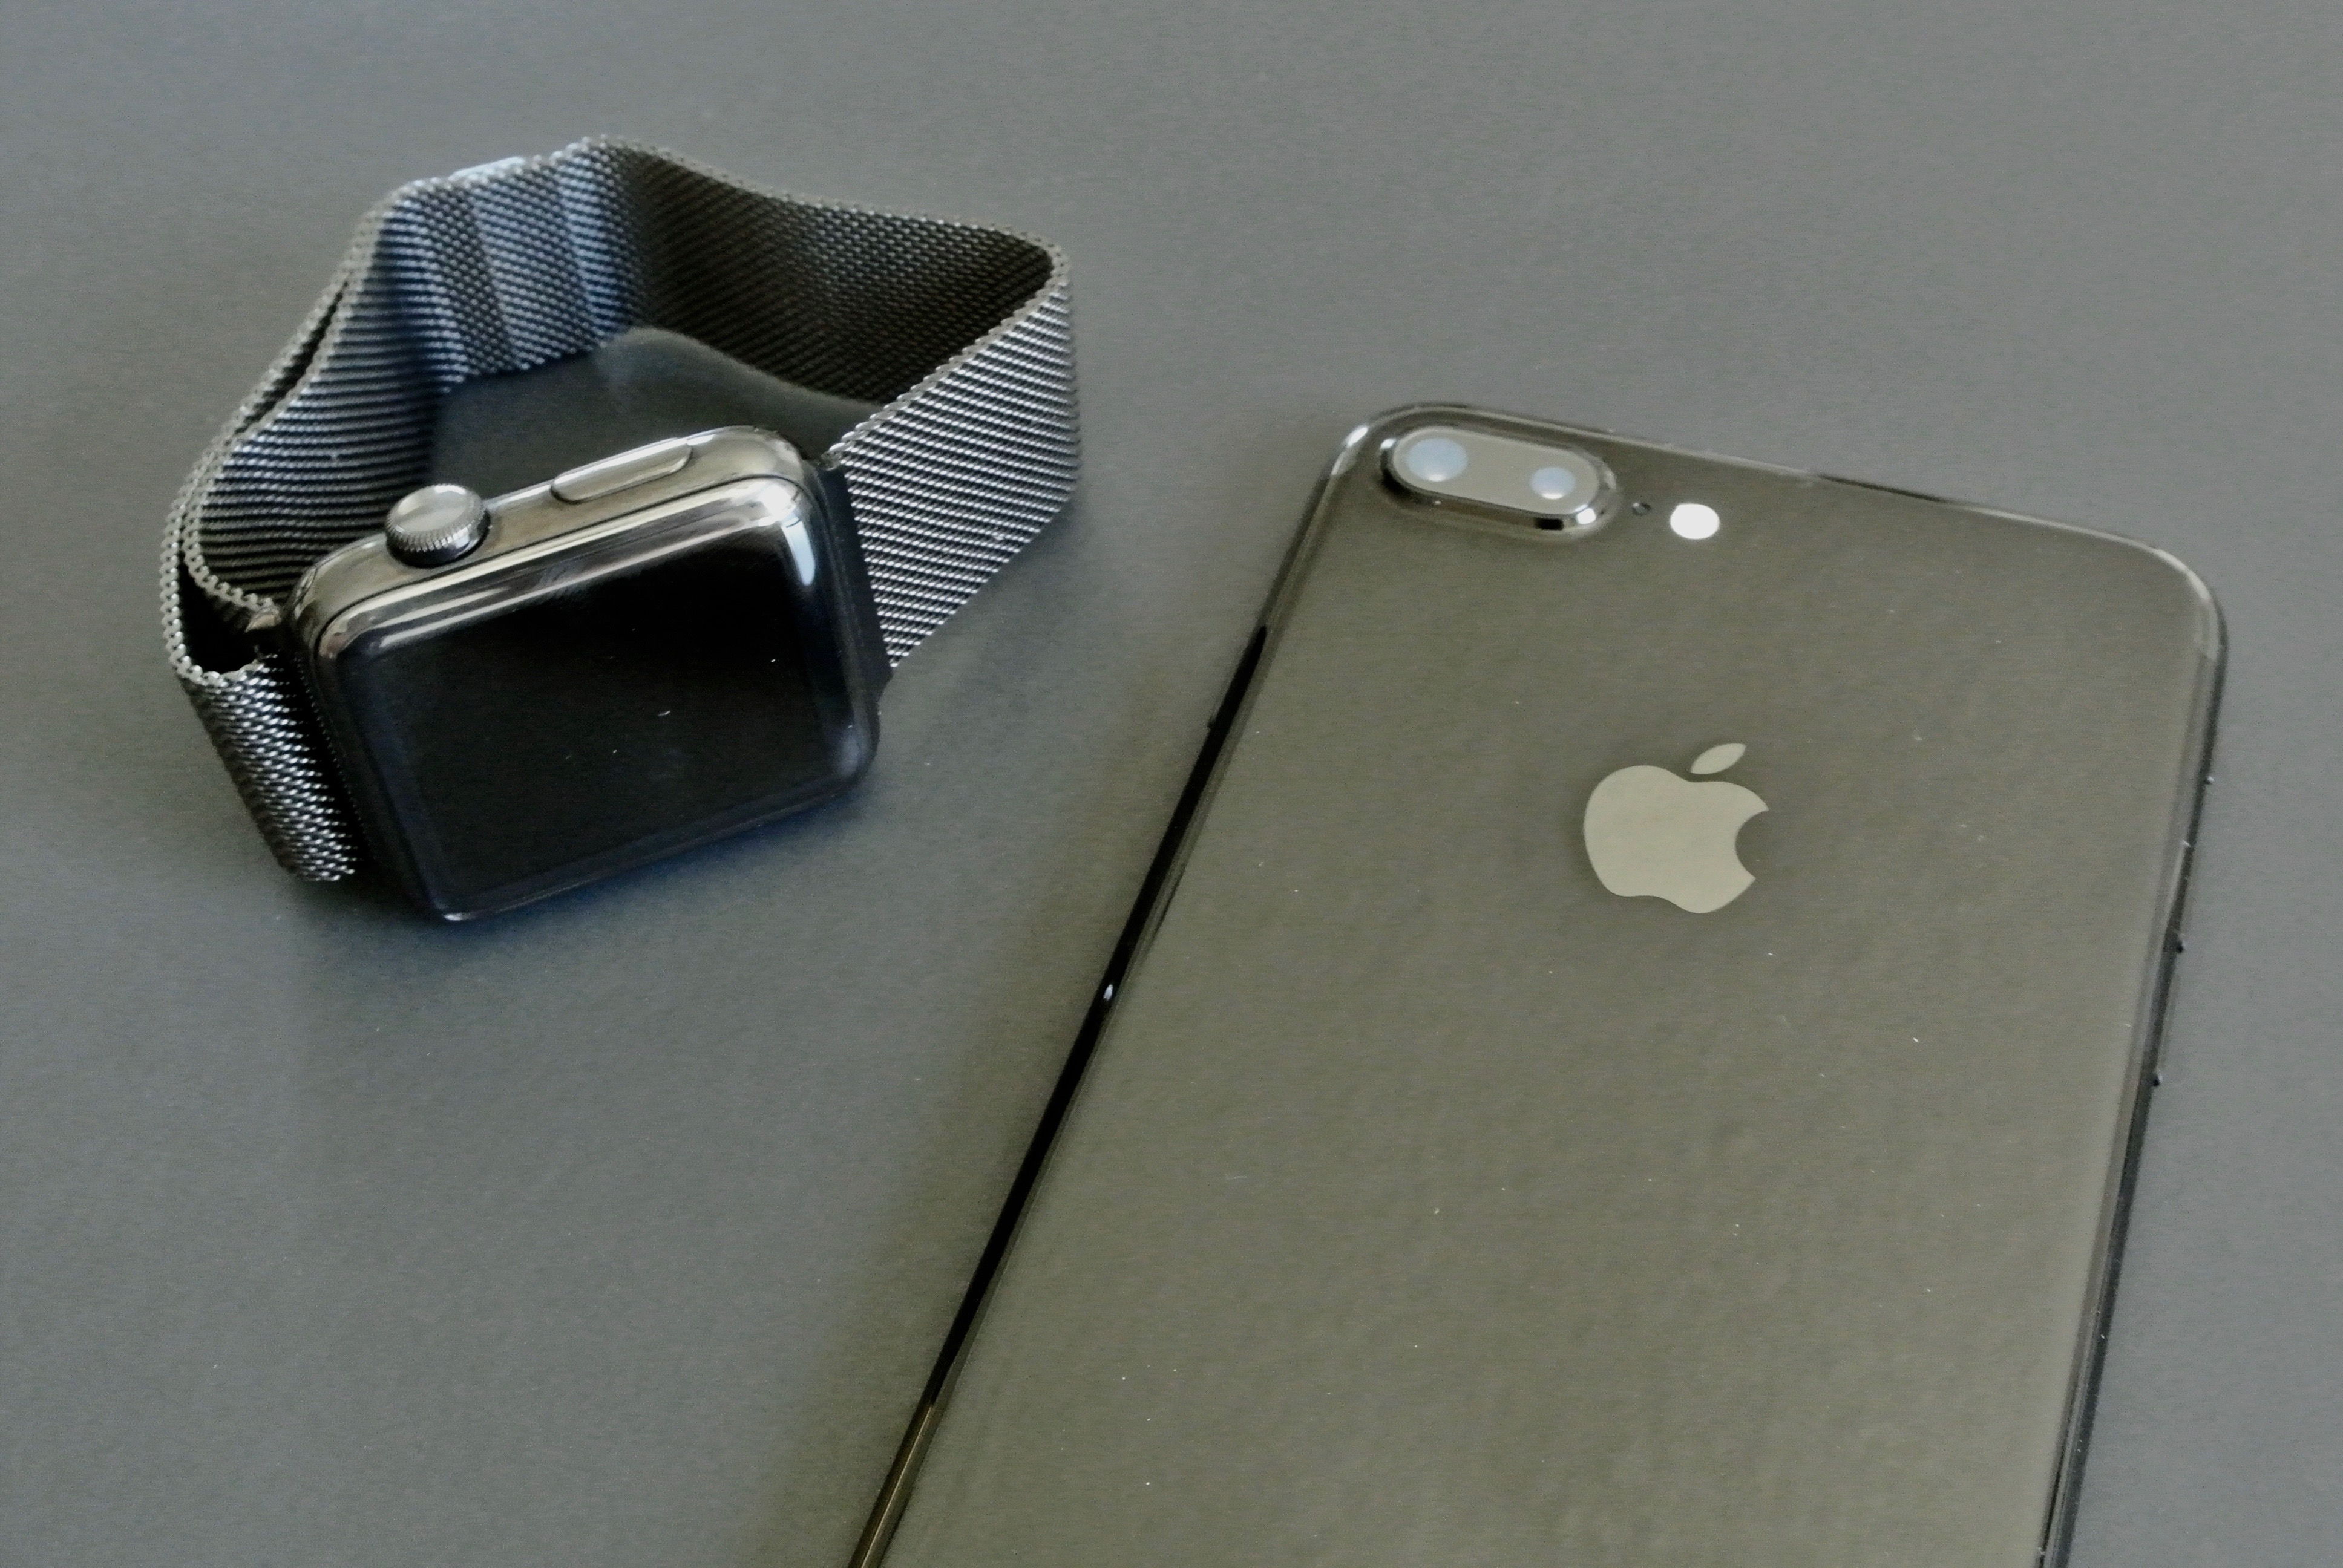 iPhone 7 gitzwart versus Apple Watch Space Black 2